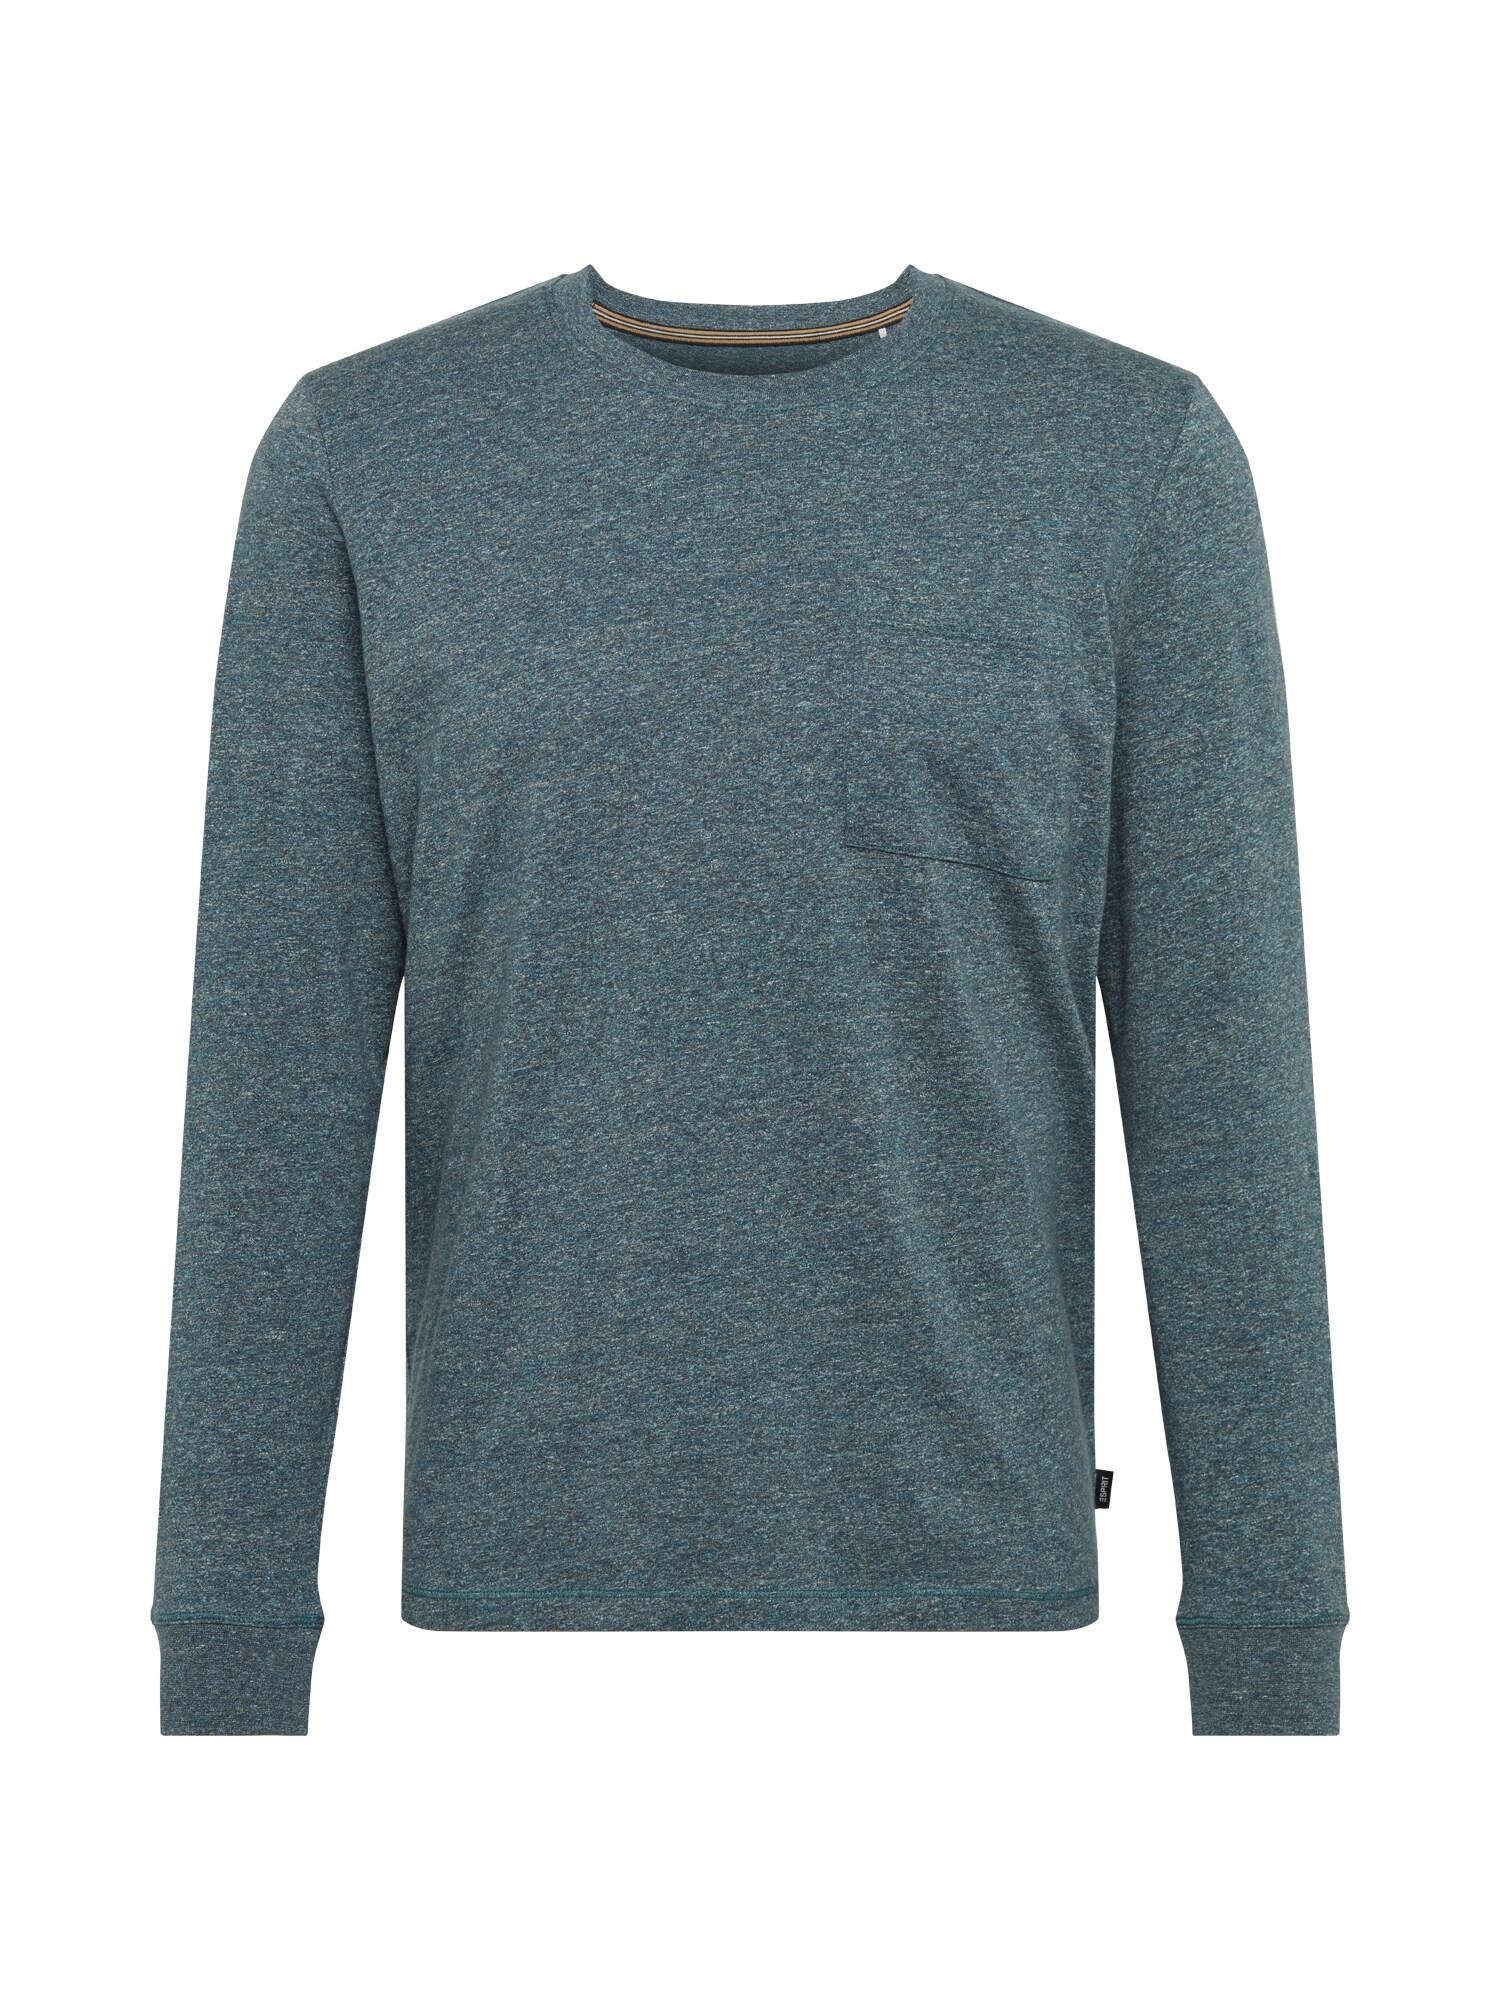 ESPRIT Marškinėliai 'Marl'  margai mėlyna / margai pilka